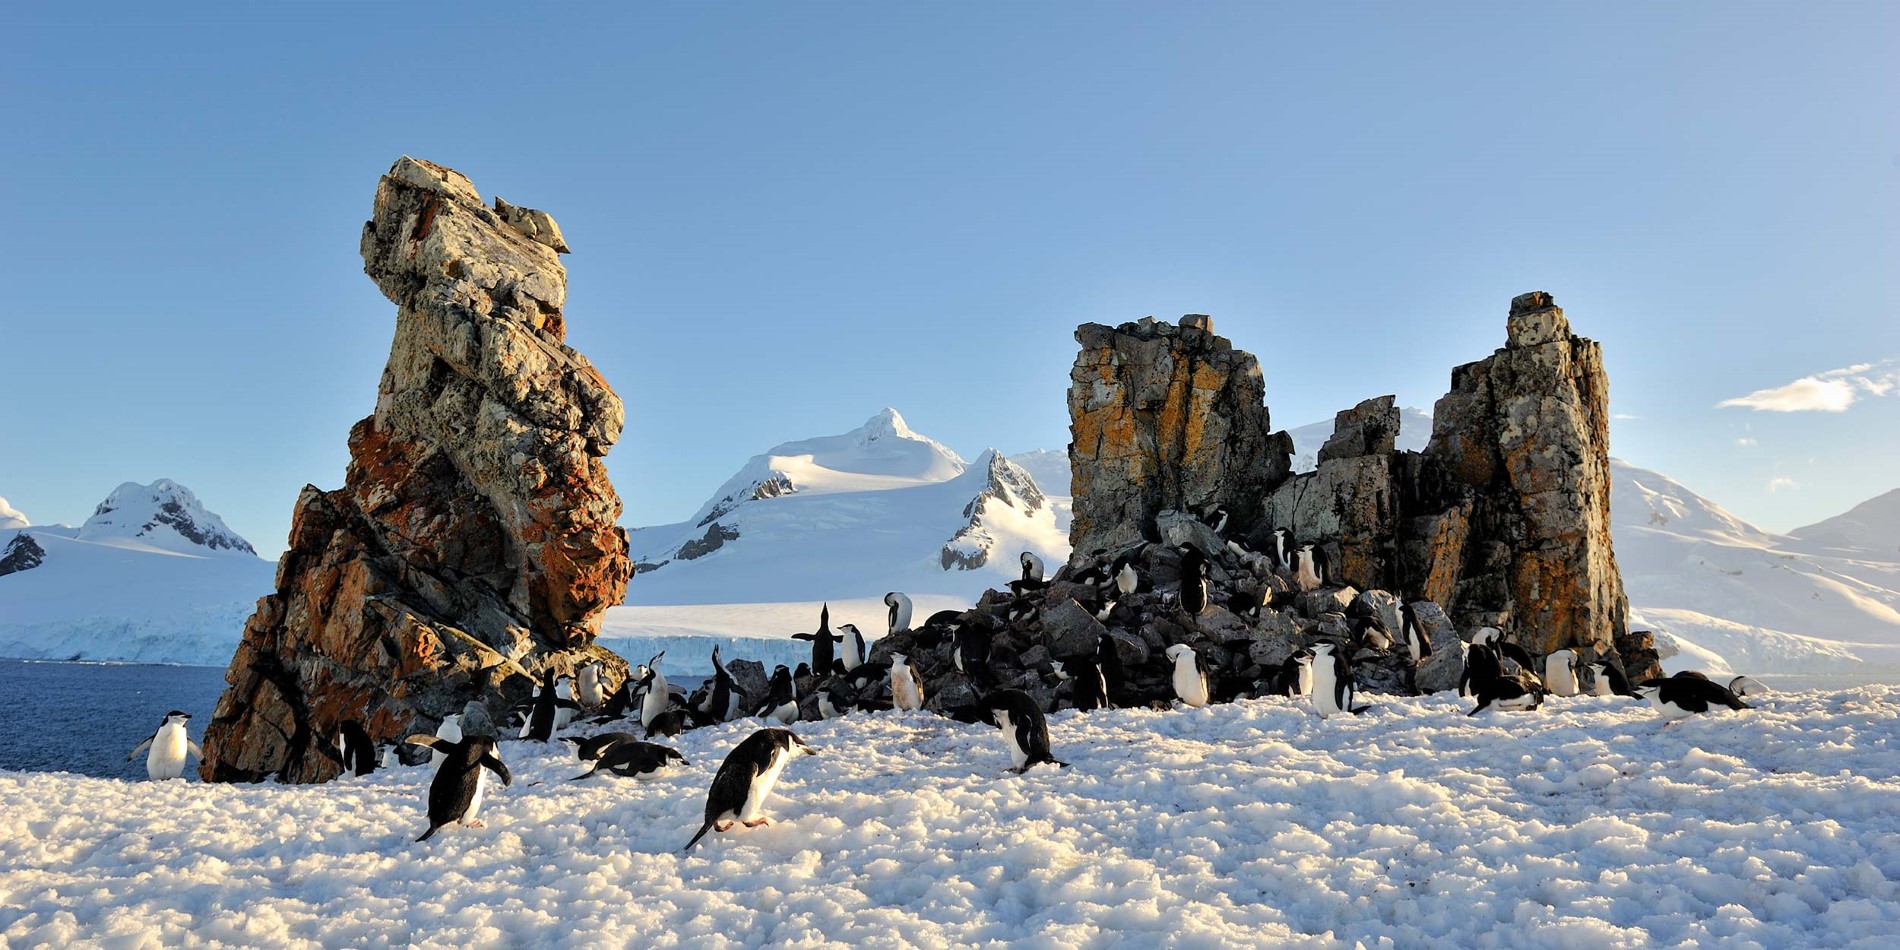 Pingviner i deres naturlige miljø